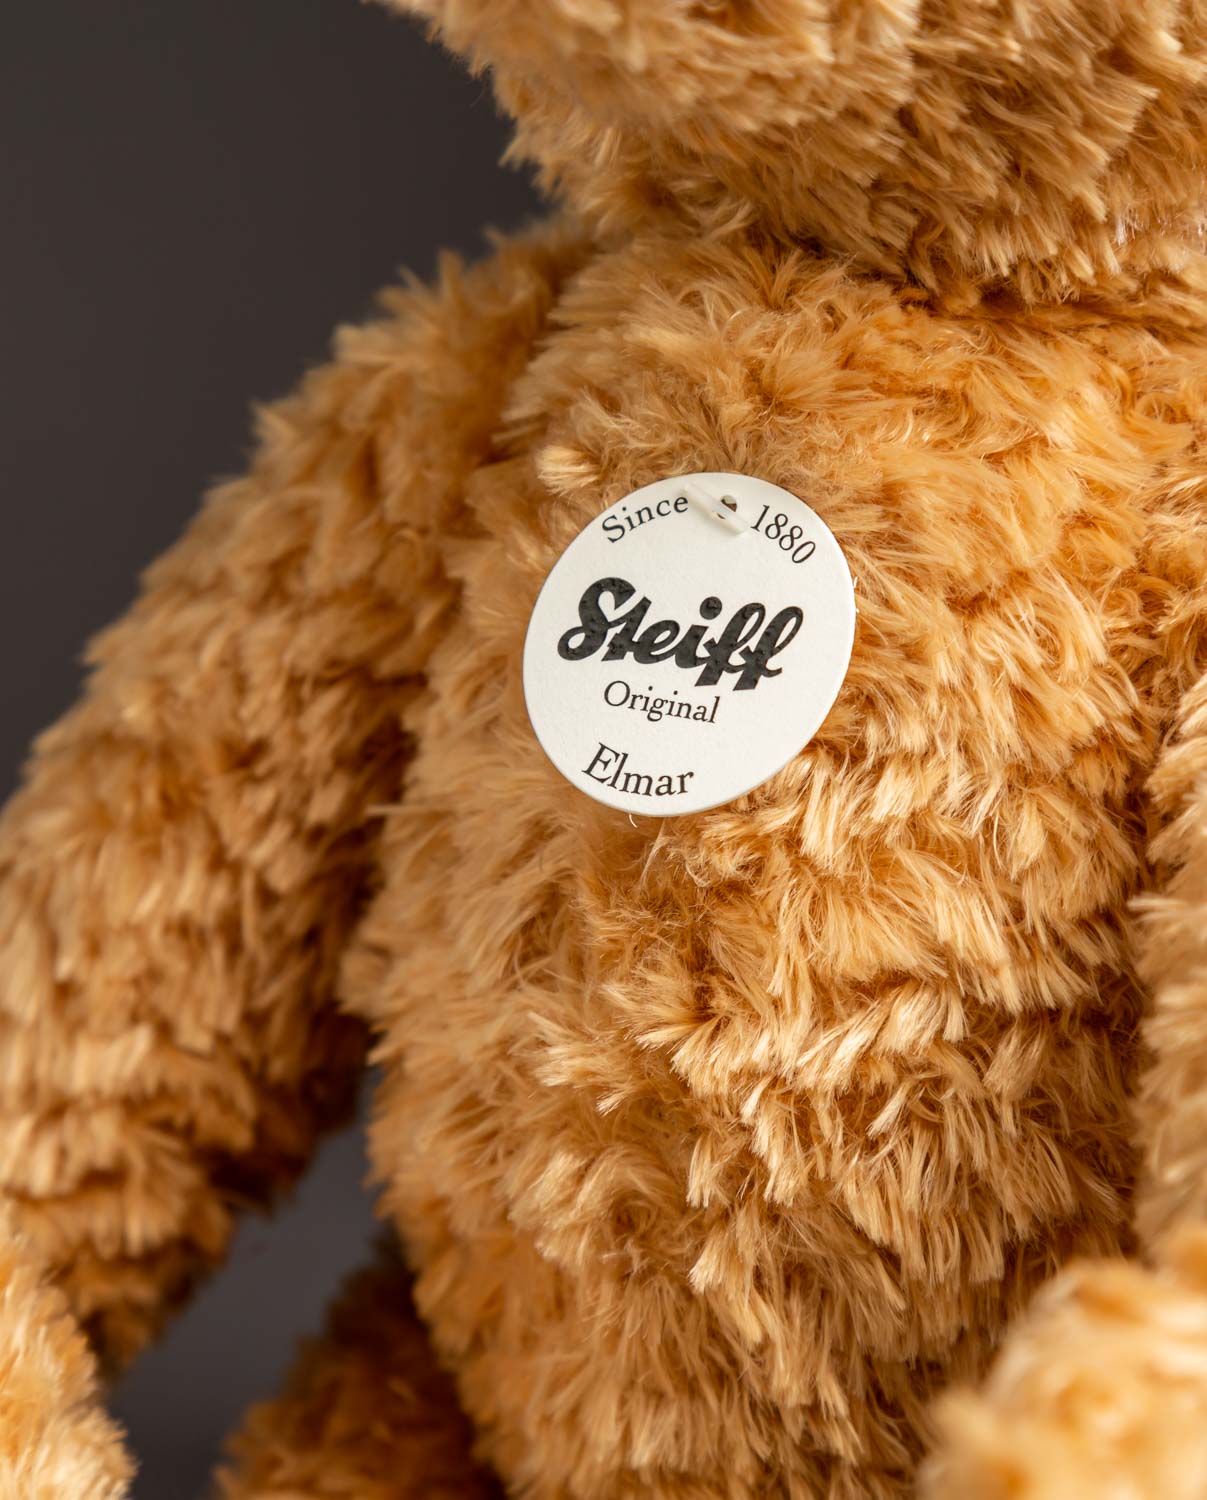 Steiff Elmar Cuddly Soft Plush Teddy Bear, Golden Brown, M